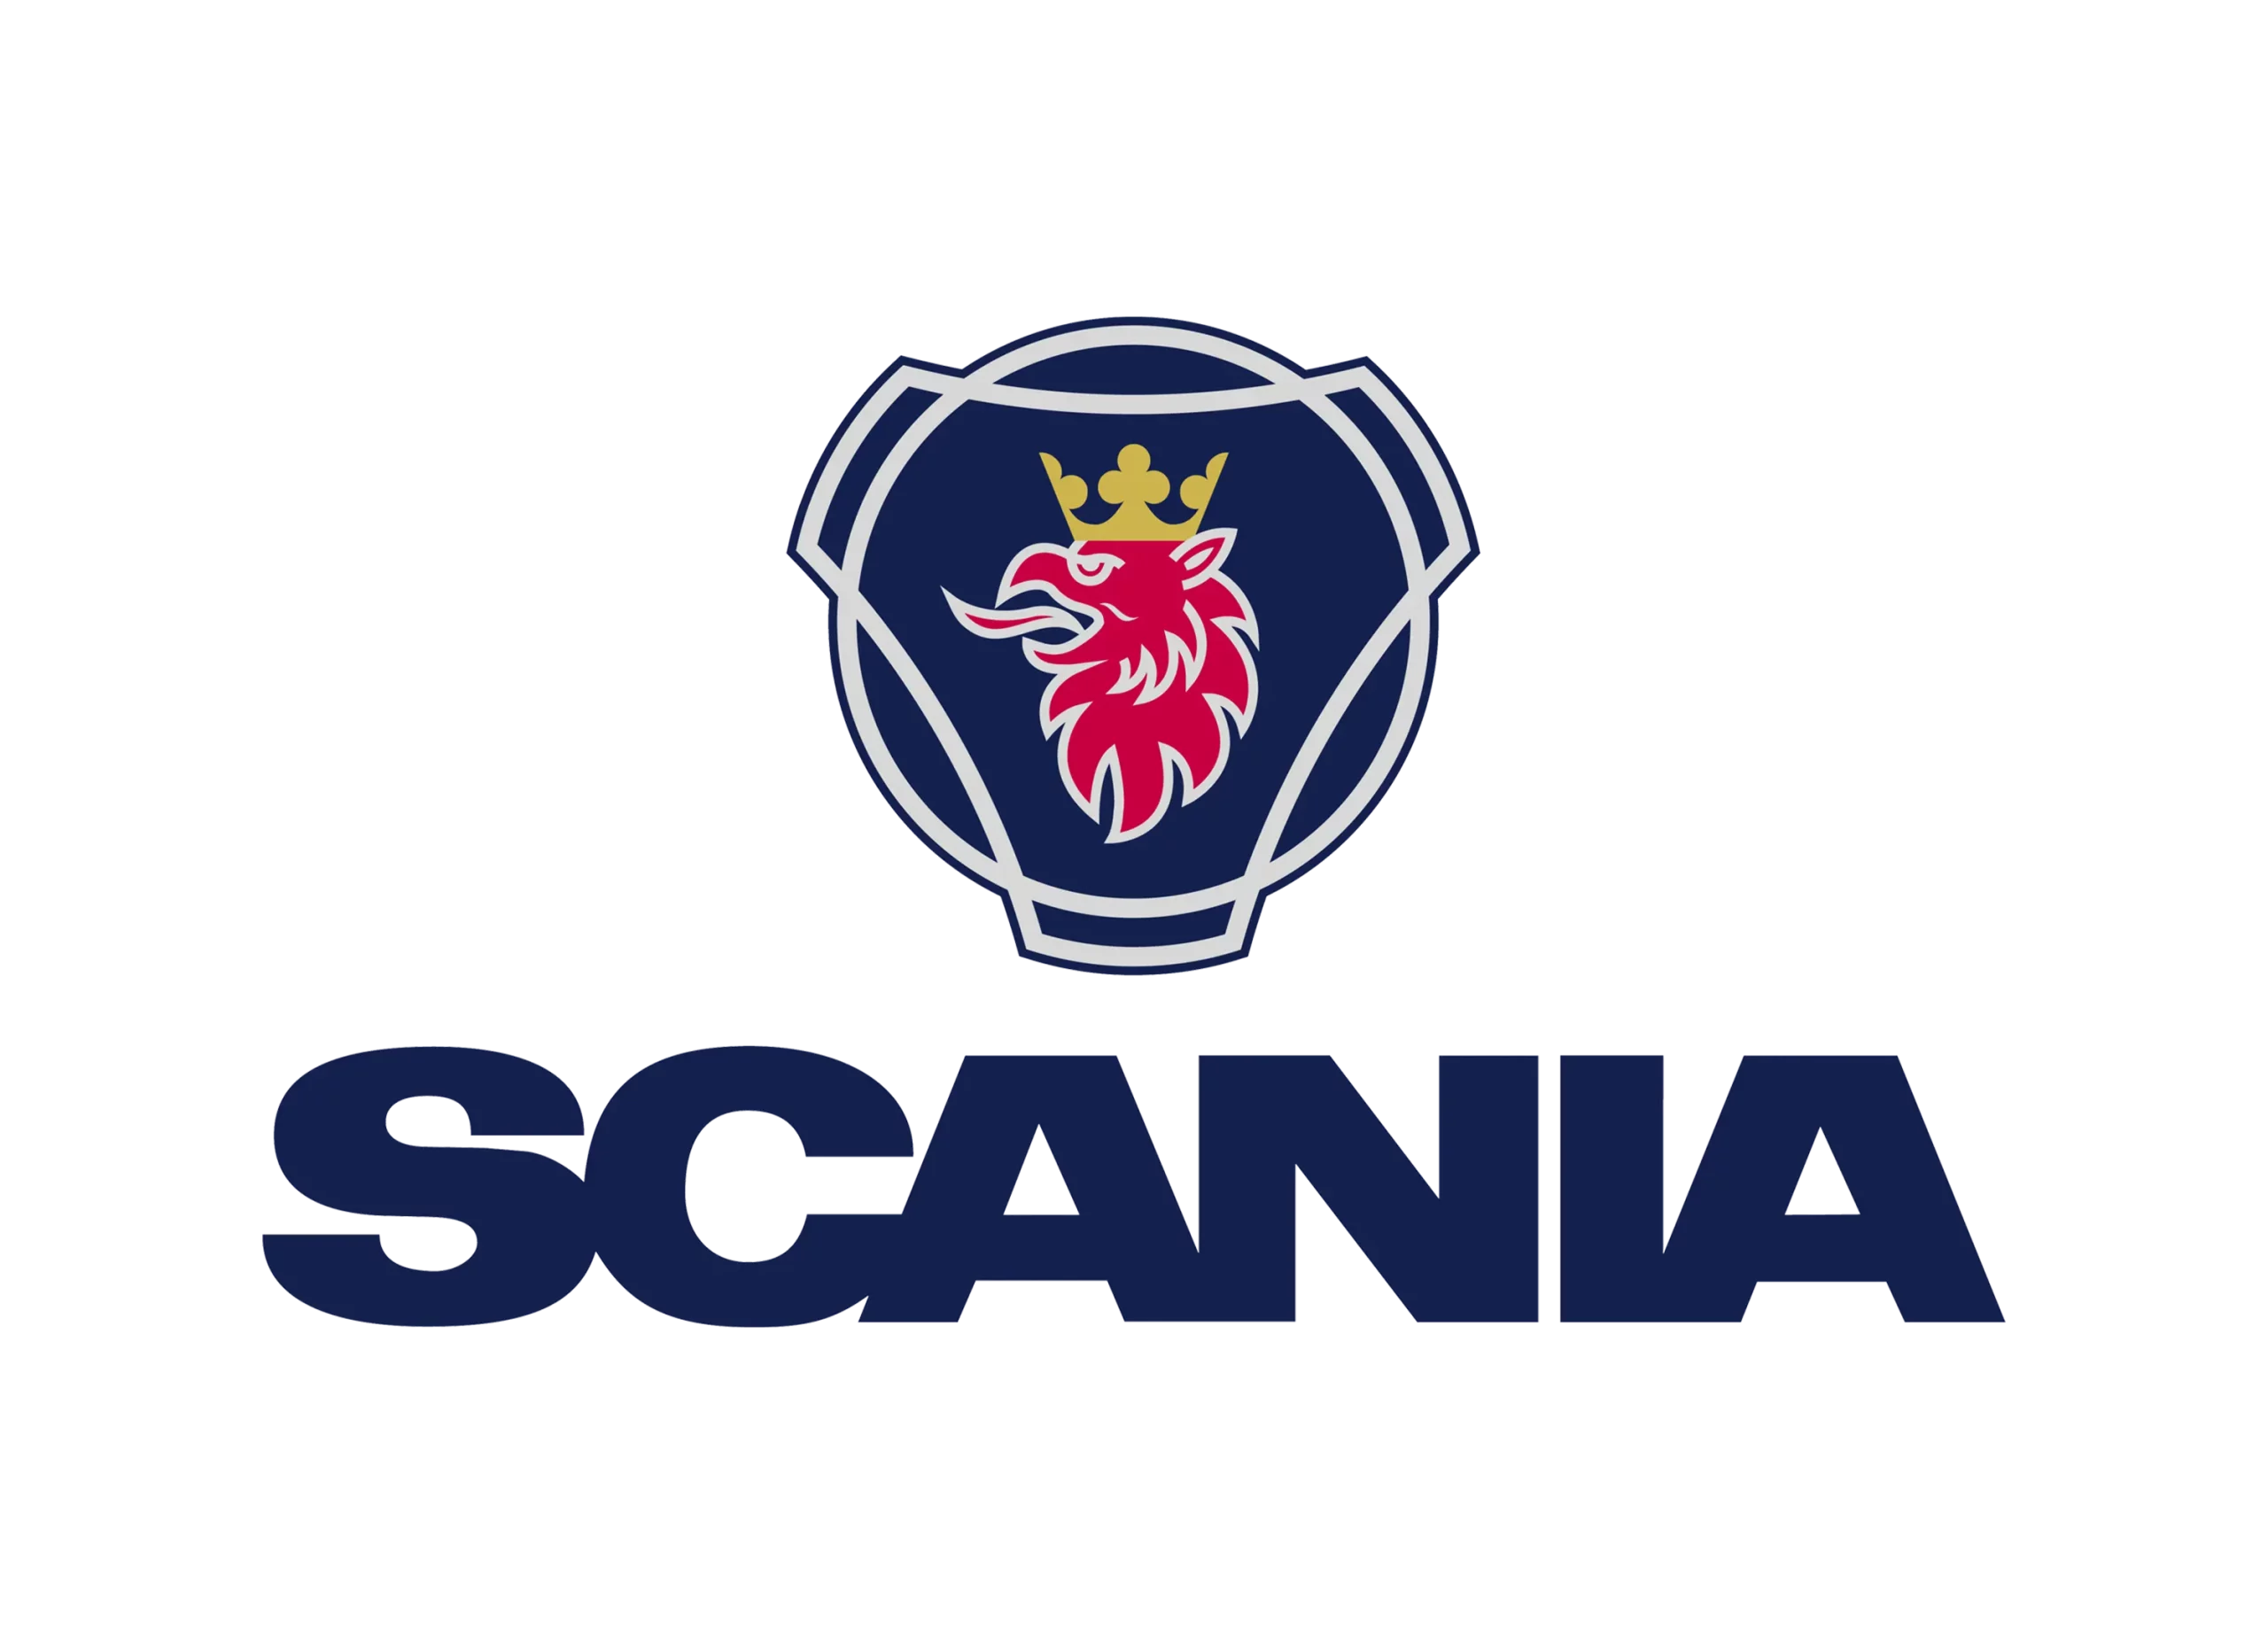 Scania logo 2017-present